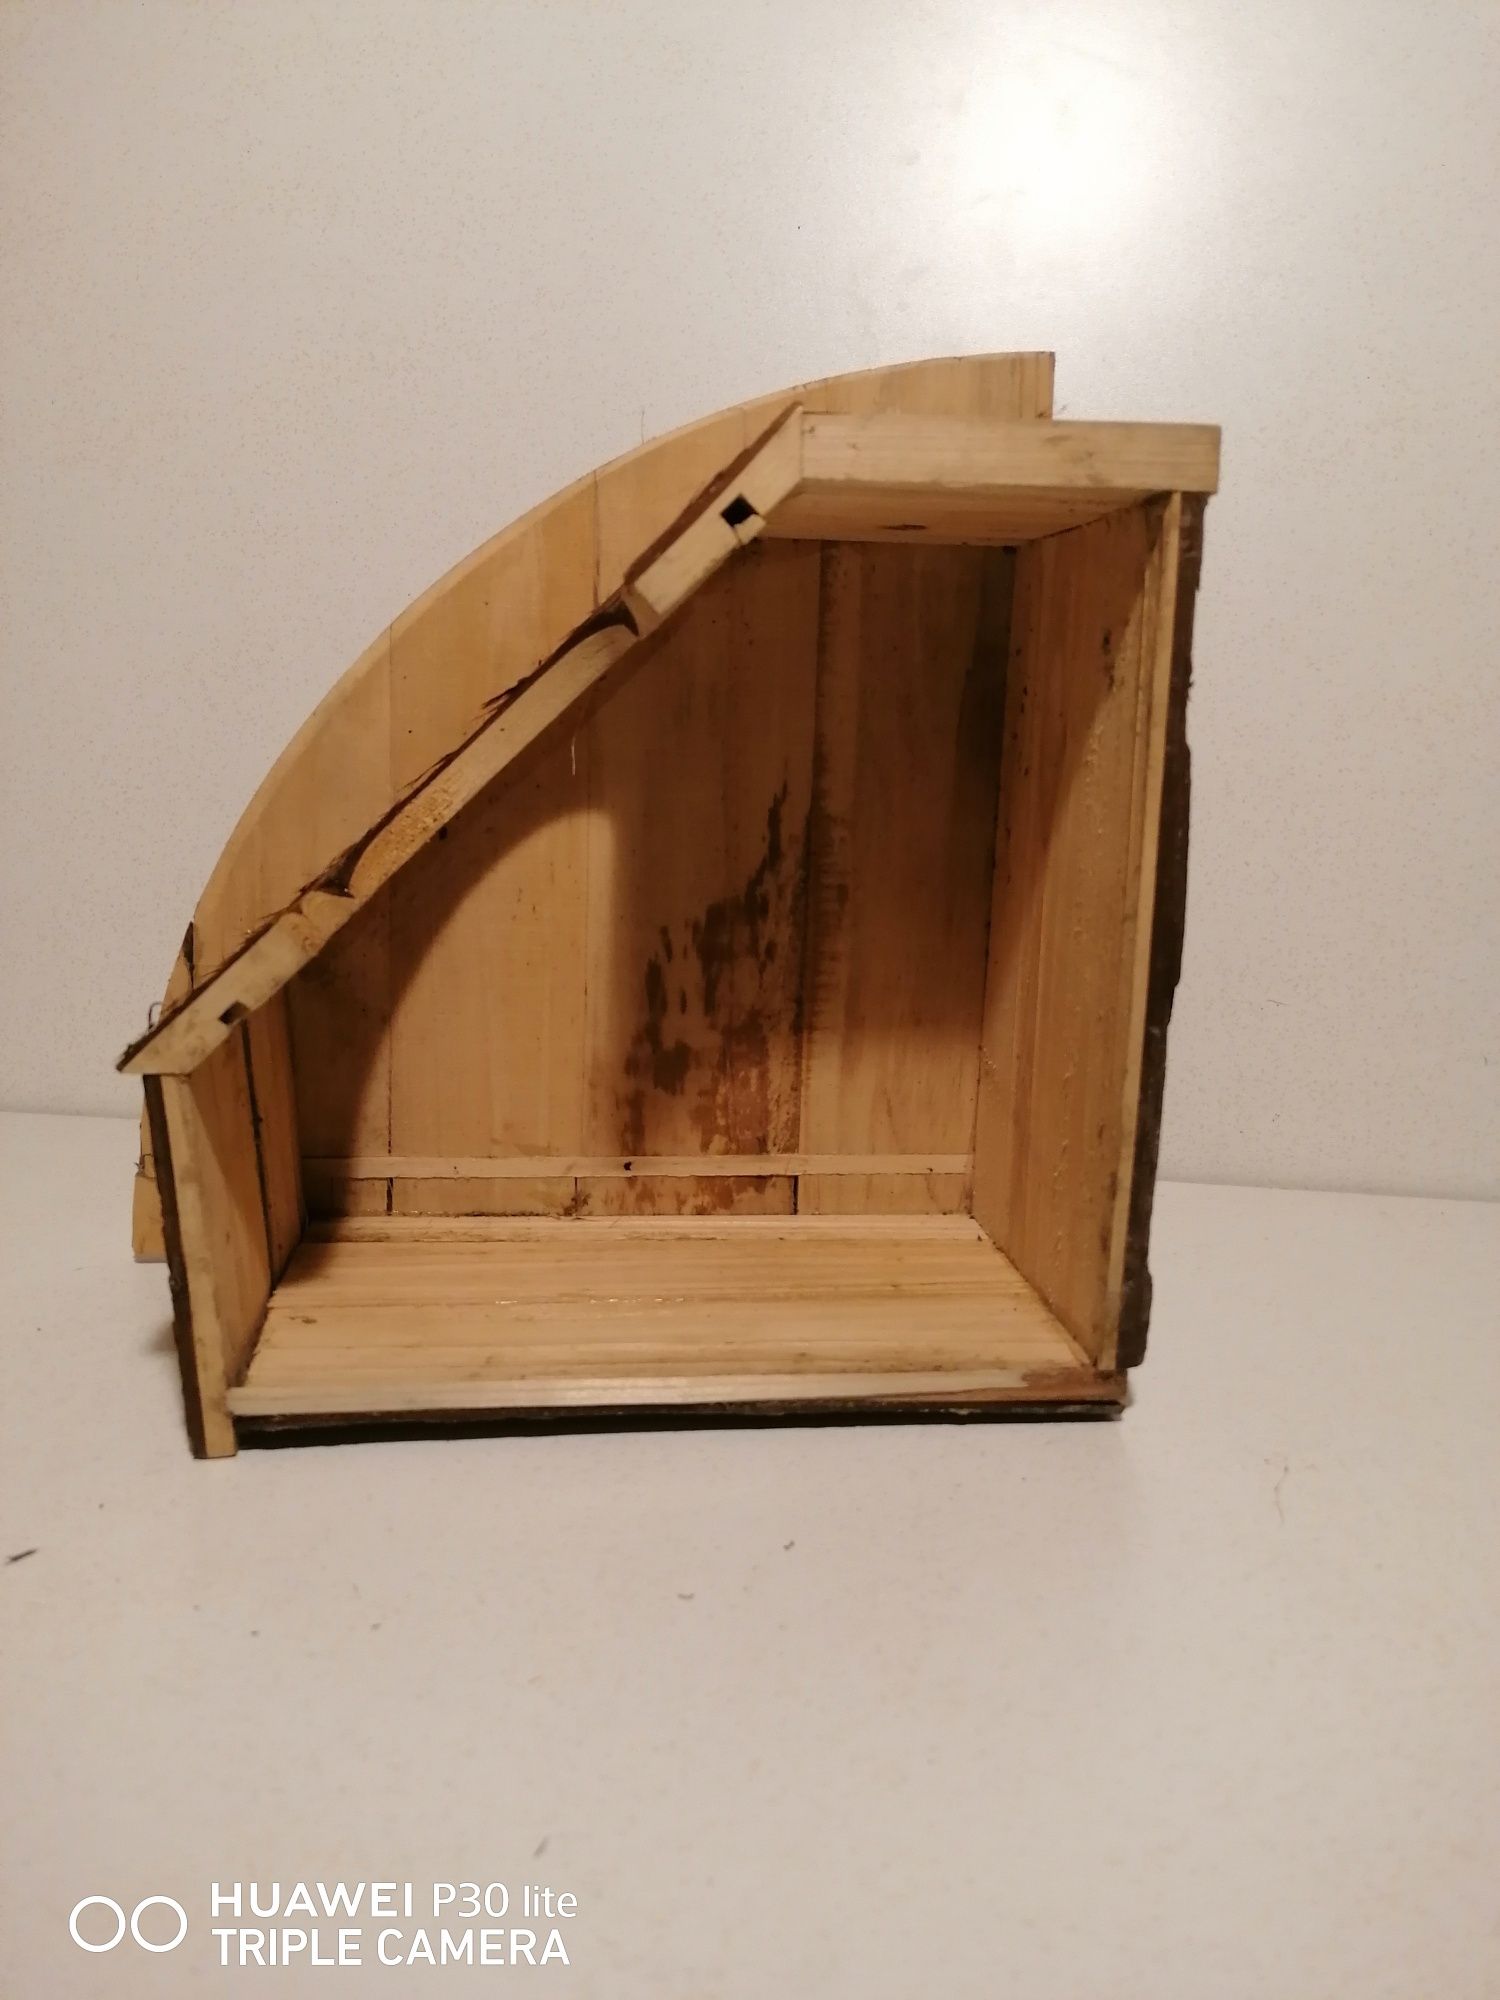 CROCI drewniany domek narożny, 42 x 15 x 30 cm

Marka: Croci
Wymiary p